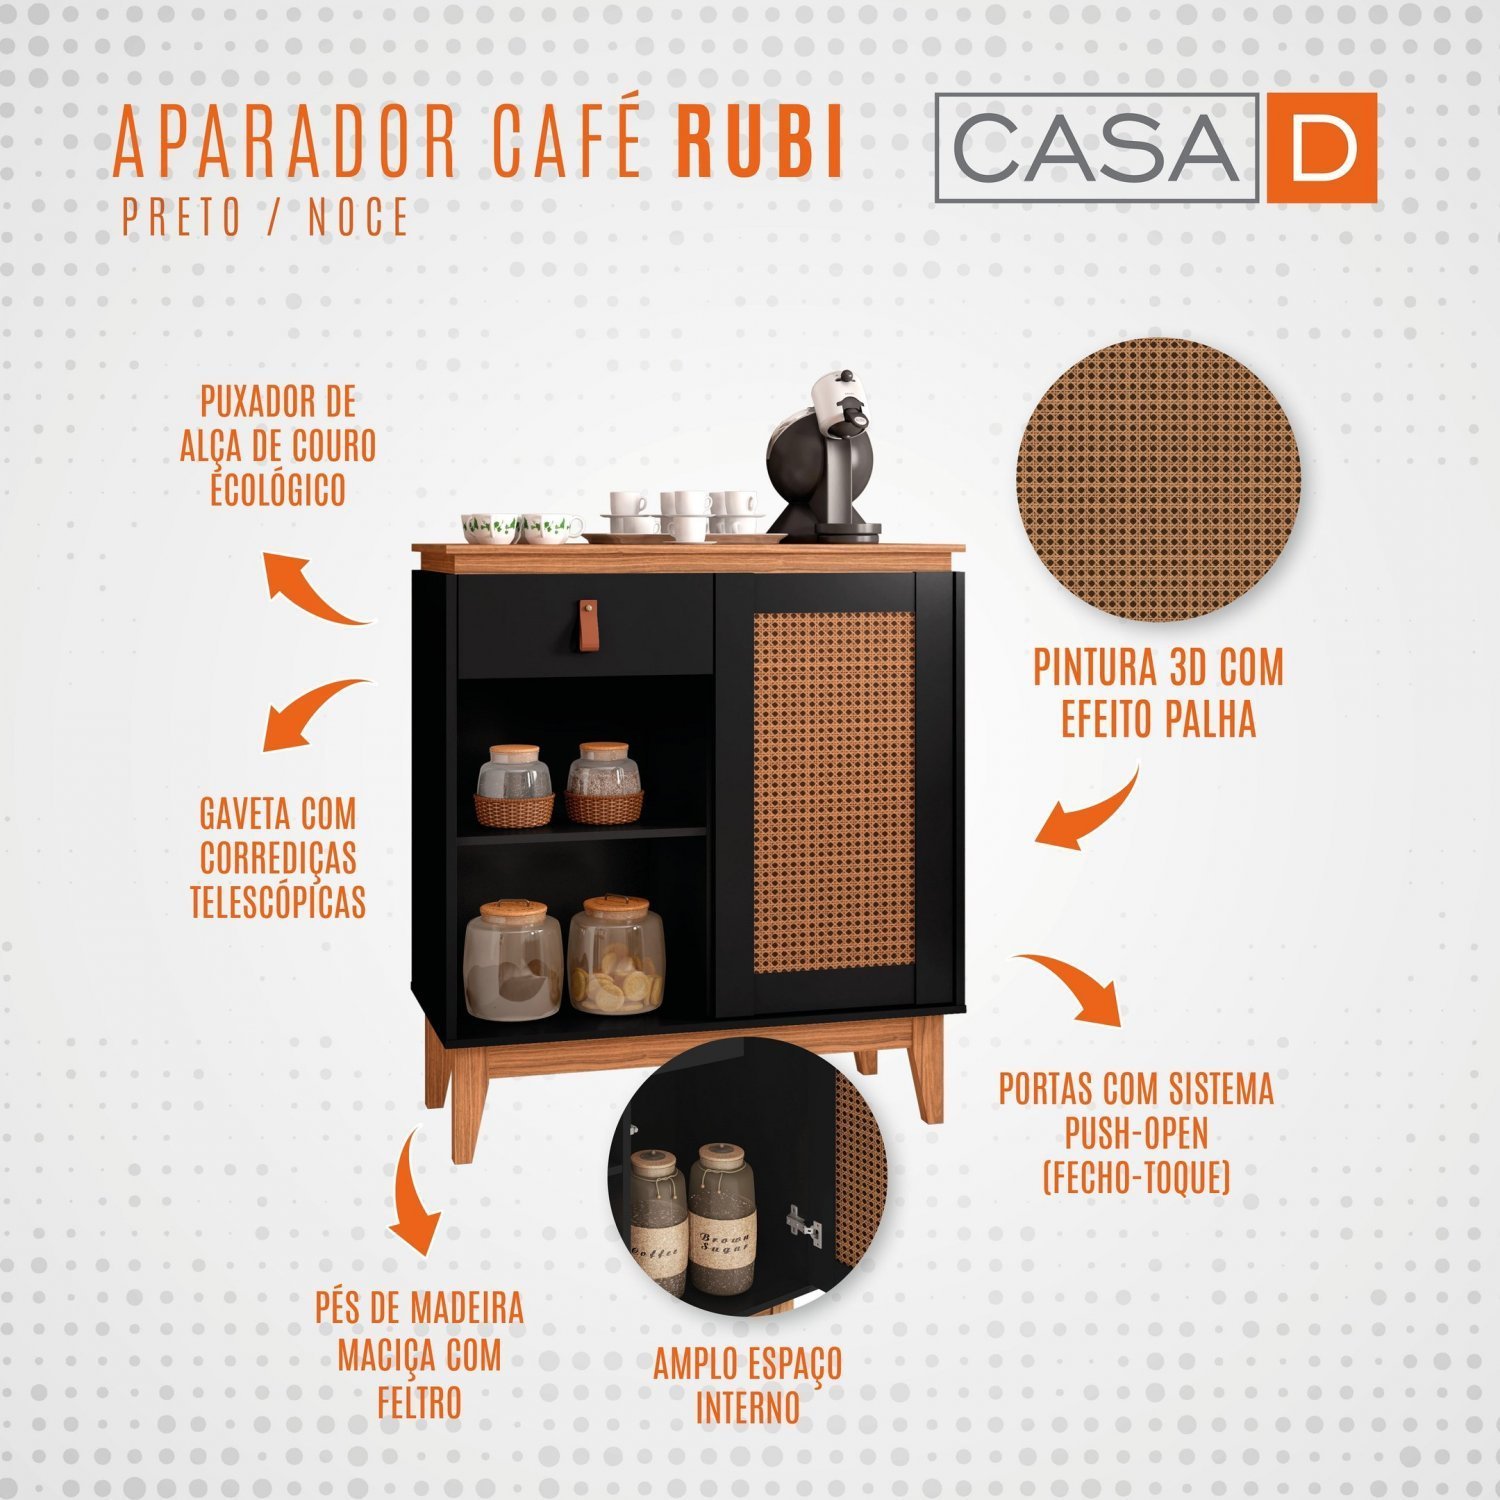 Aparador Café Rubi Casa D - 7